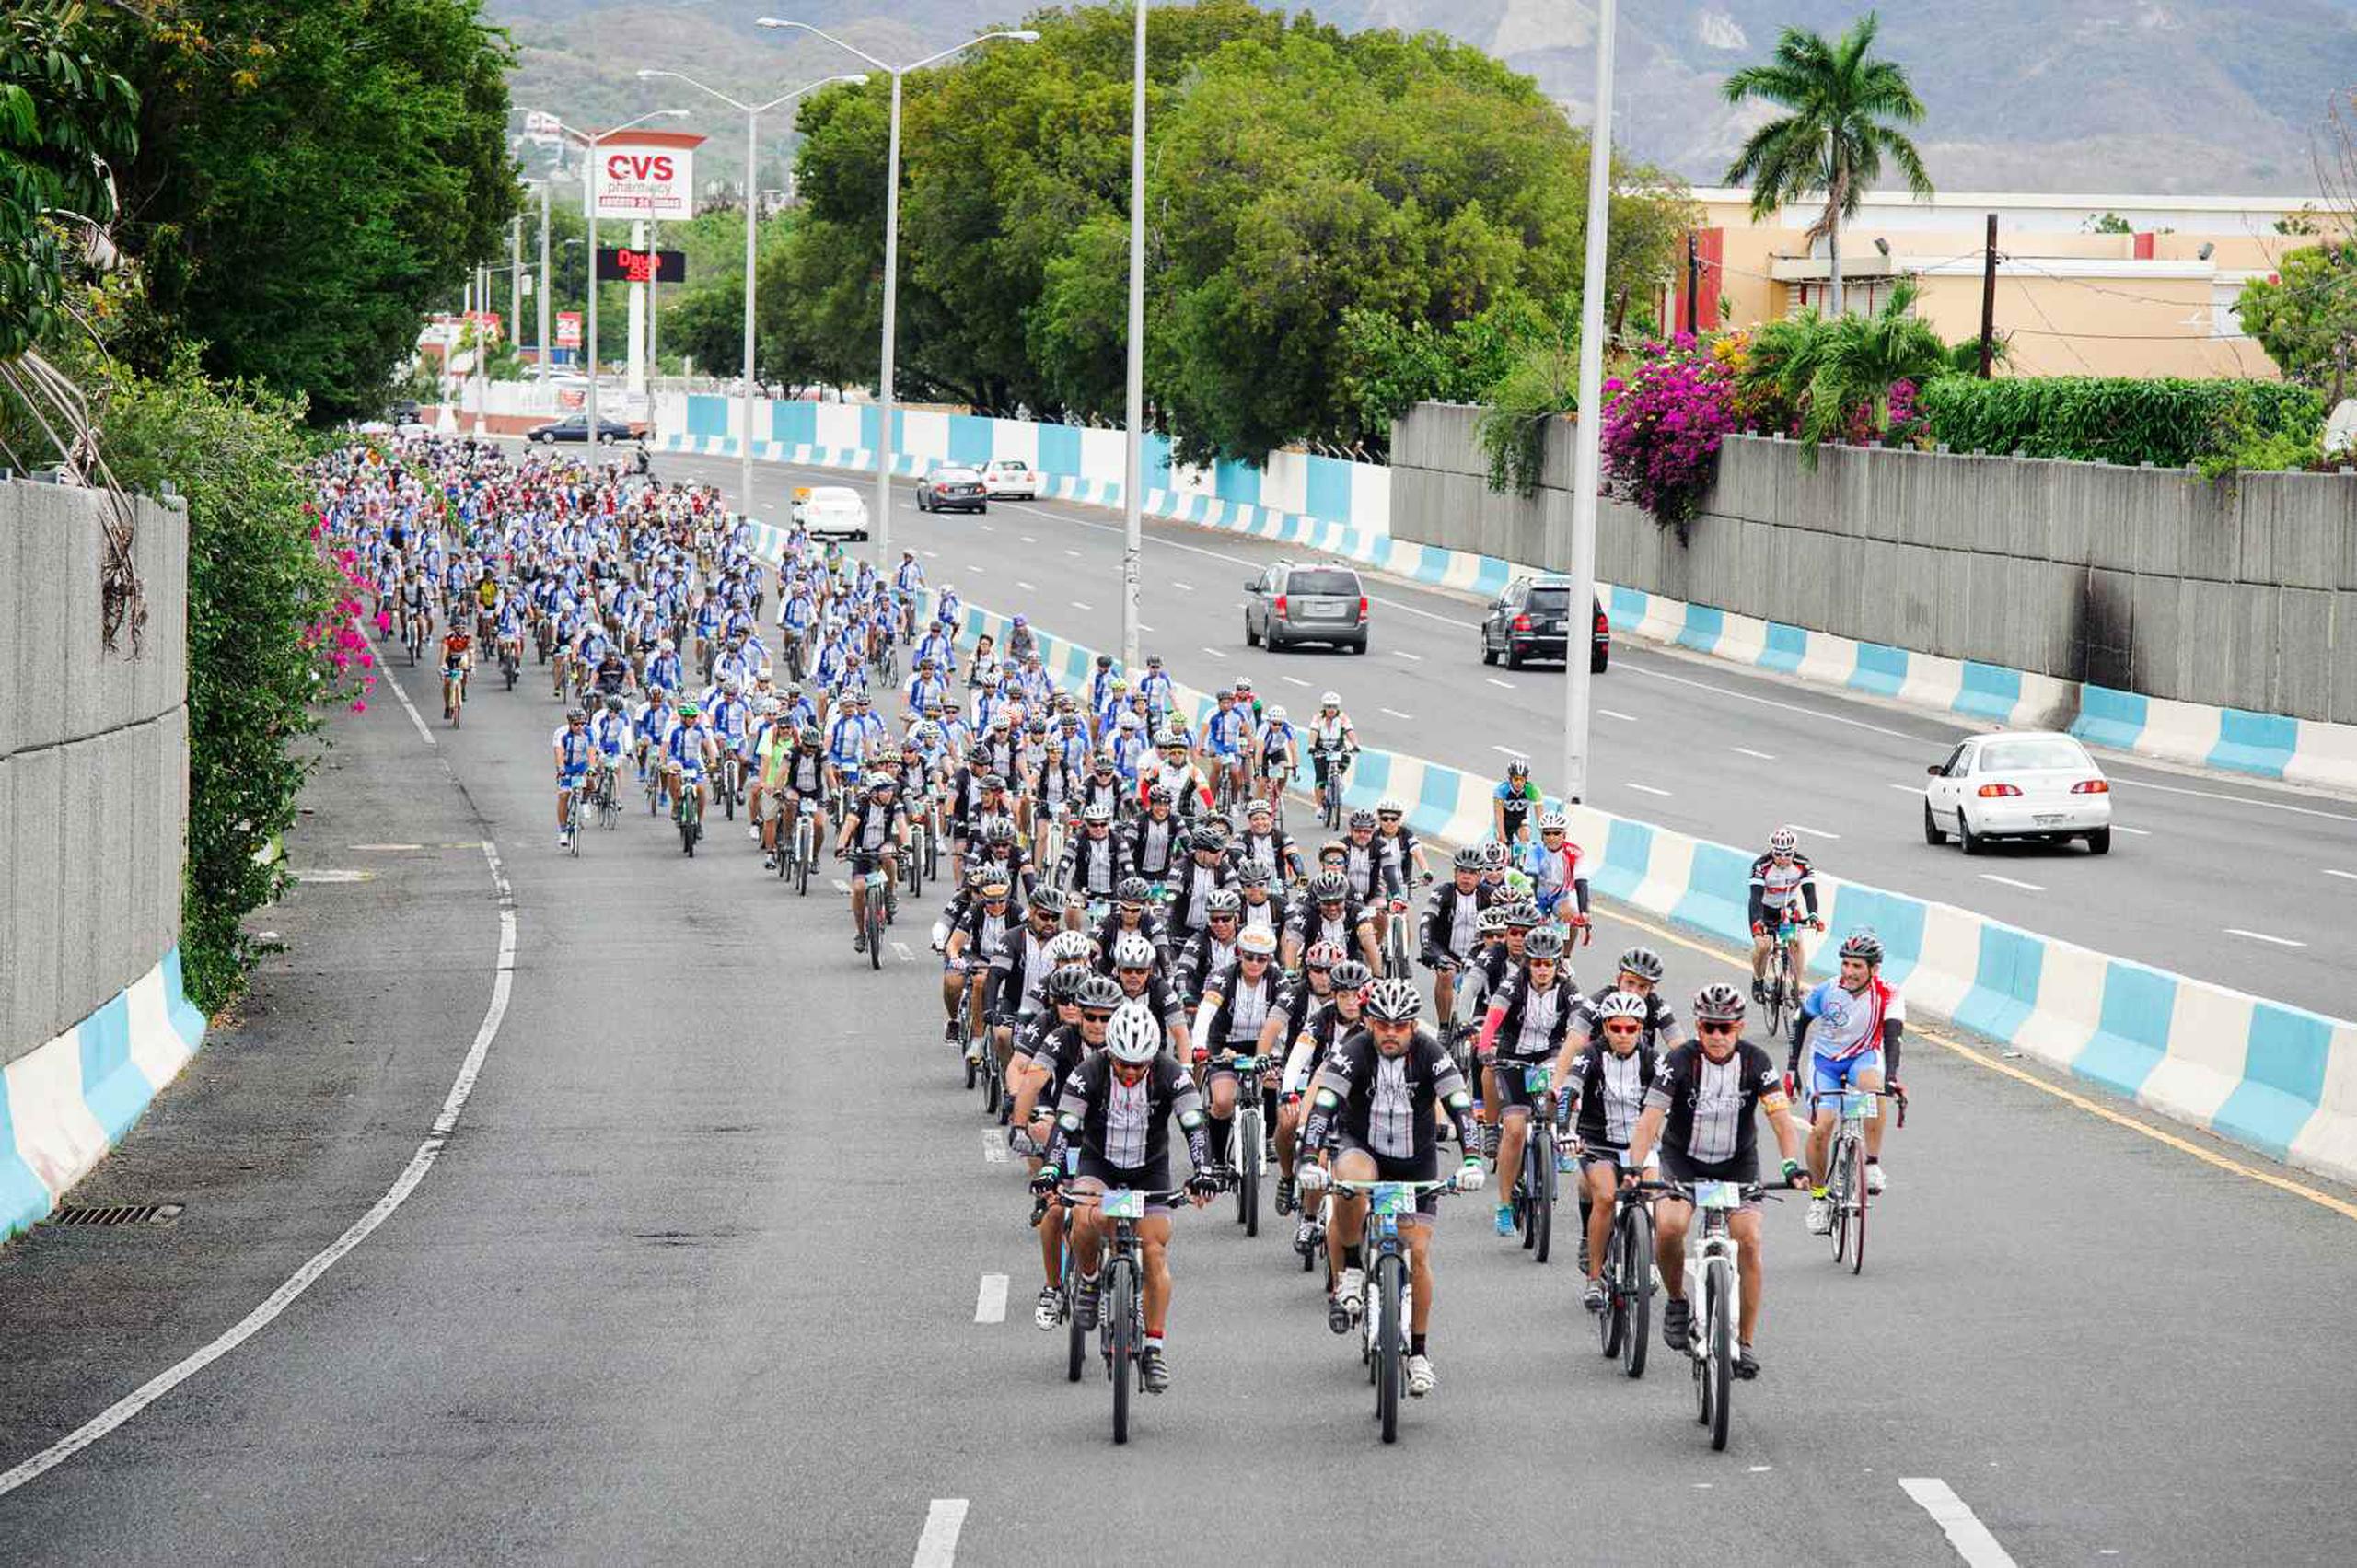 Los participantes rodaron hasta la meta con un mensaje claro de que practicar el ciclismo contribuye a alcanzar una vida saludable. (Suministrada)